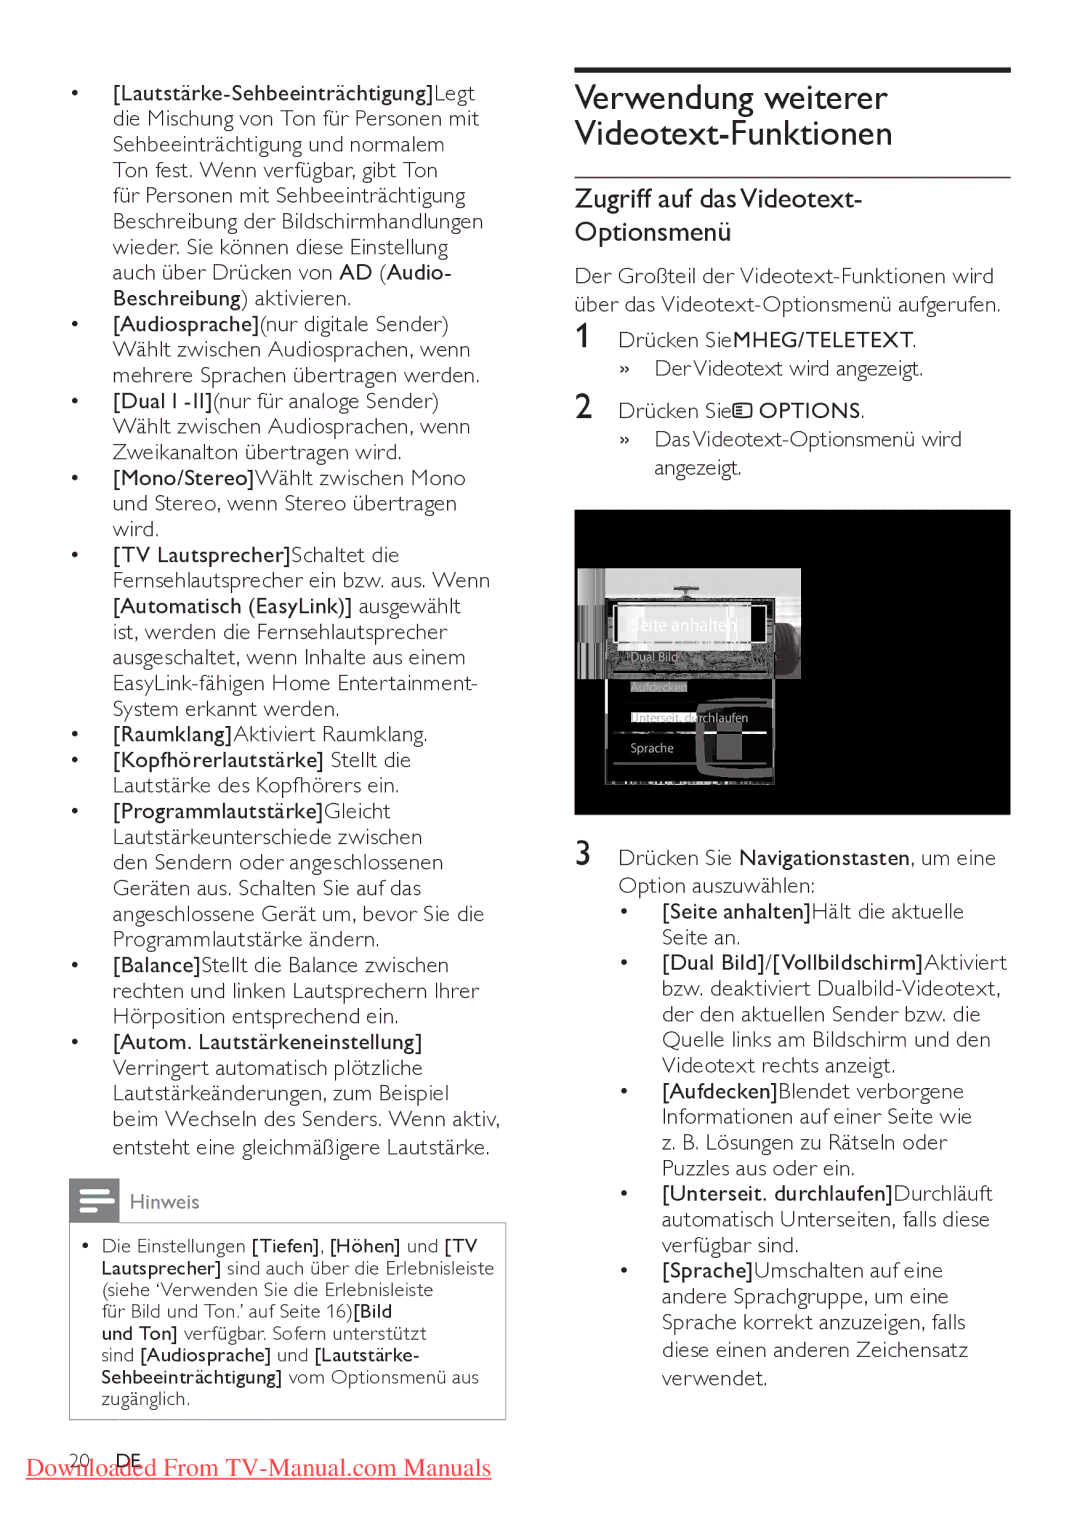 Philips 52PFL7404H/12, 32PFL7864H/12 manual Verwendung weiterer Videotext-Funktionen, Zugriff auf das Videotext Optionsmenü 